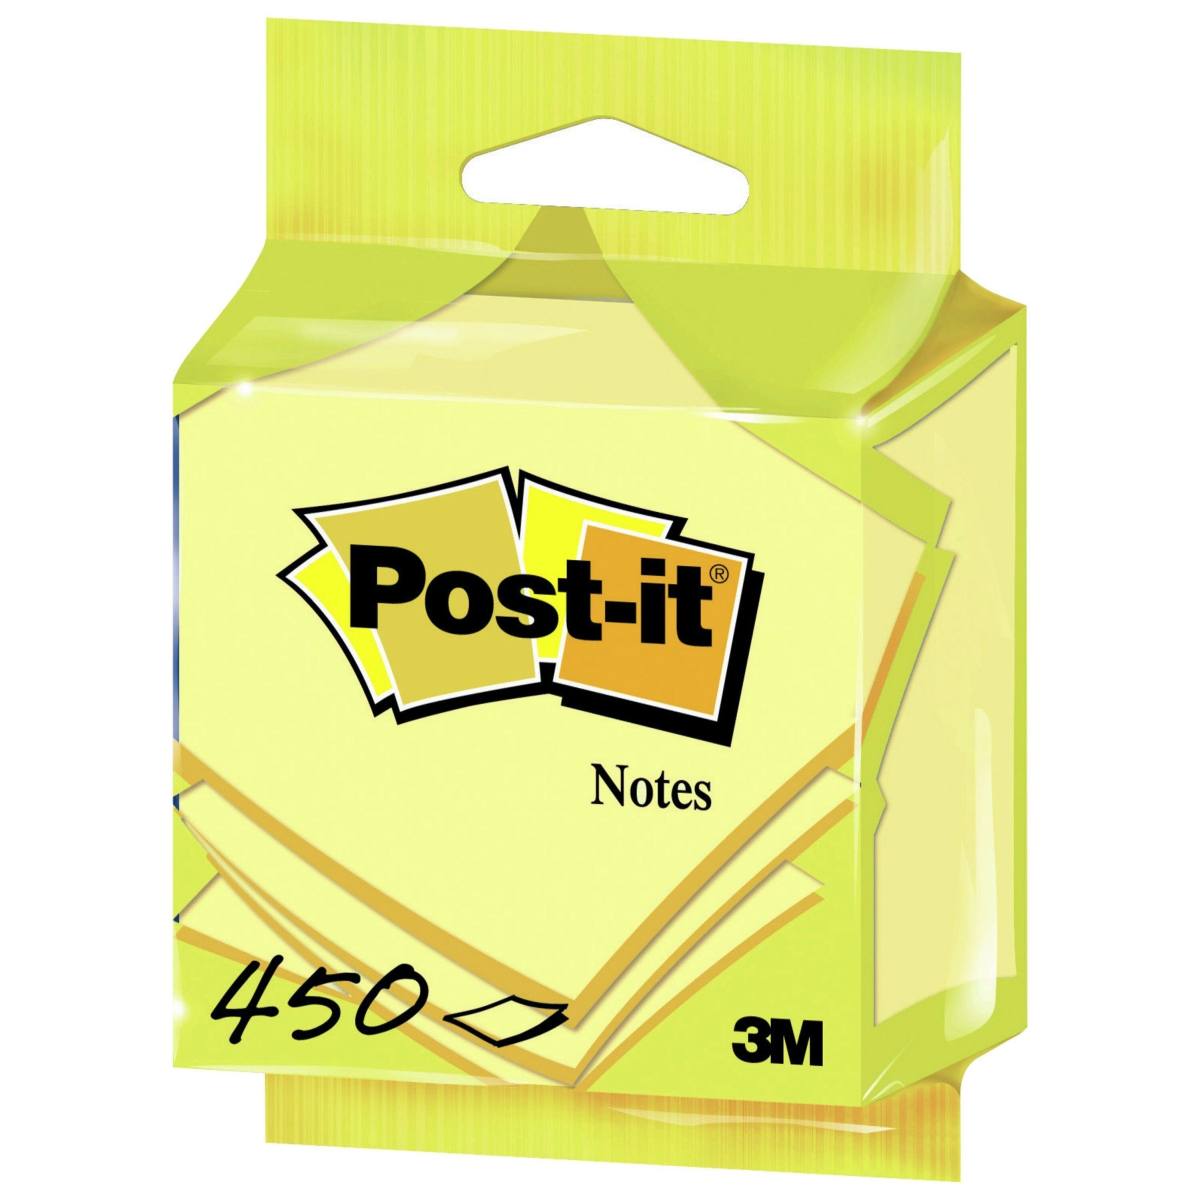 3M Post-it Kubus 5426GB, 76 mm x 76 mm, geel, 1 kubus van 450 vellen